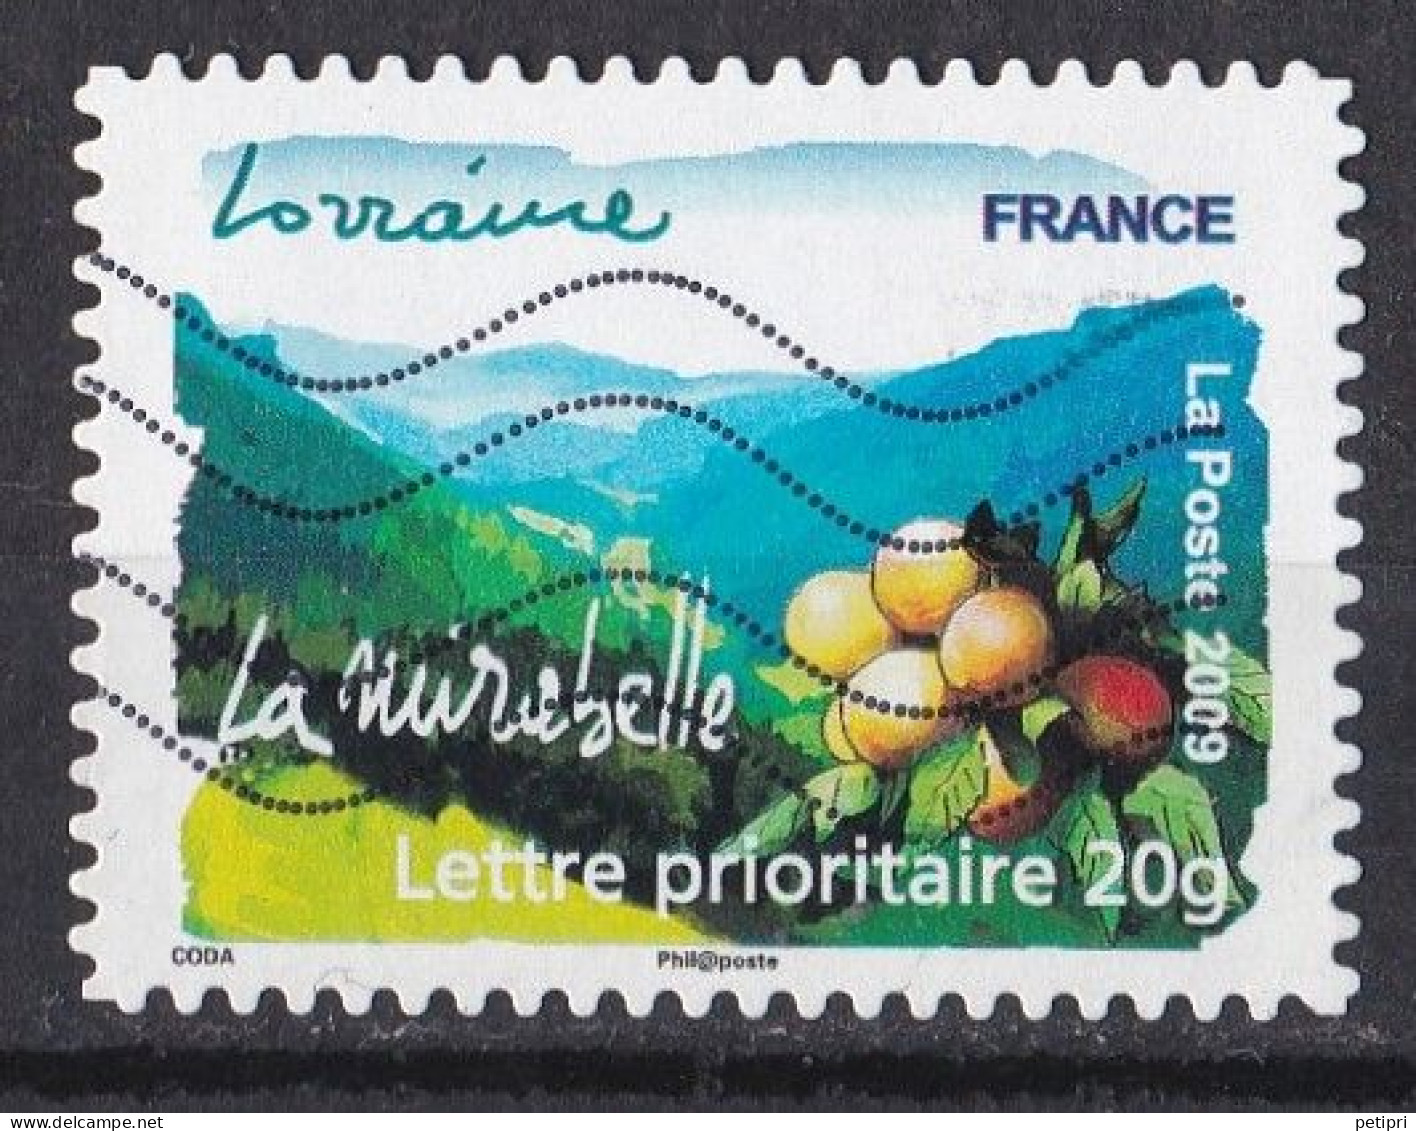 France -  Adhésifs  (autocollants )  Y&T N ° Aa   292  Oblitéré - Used Stamps